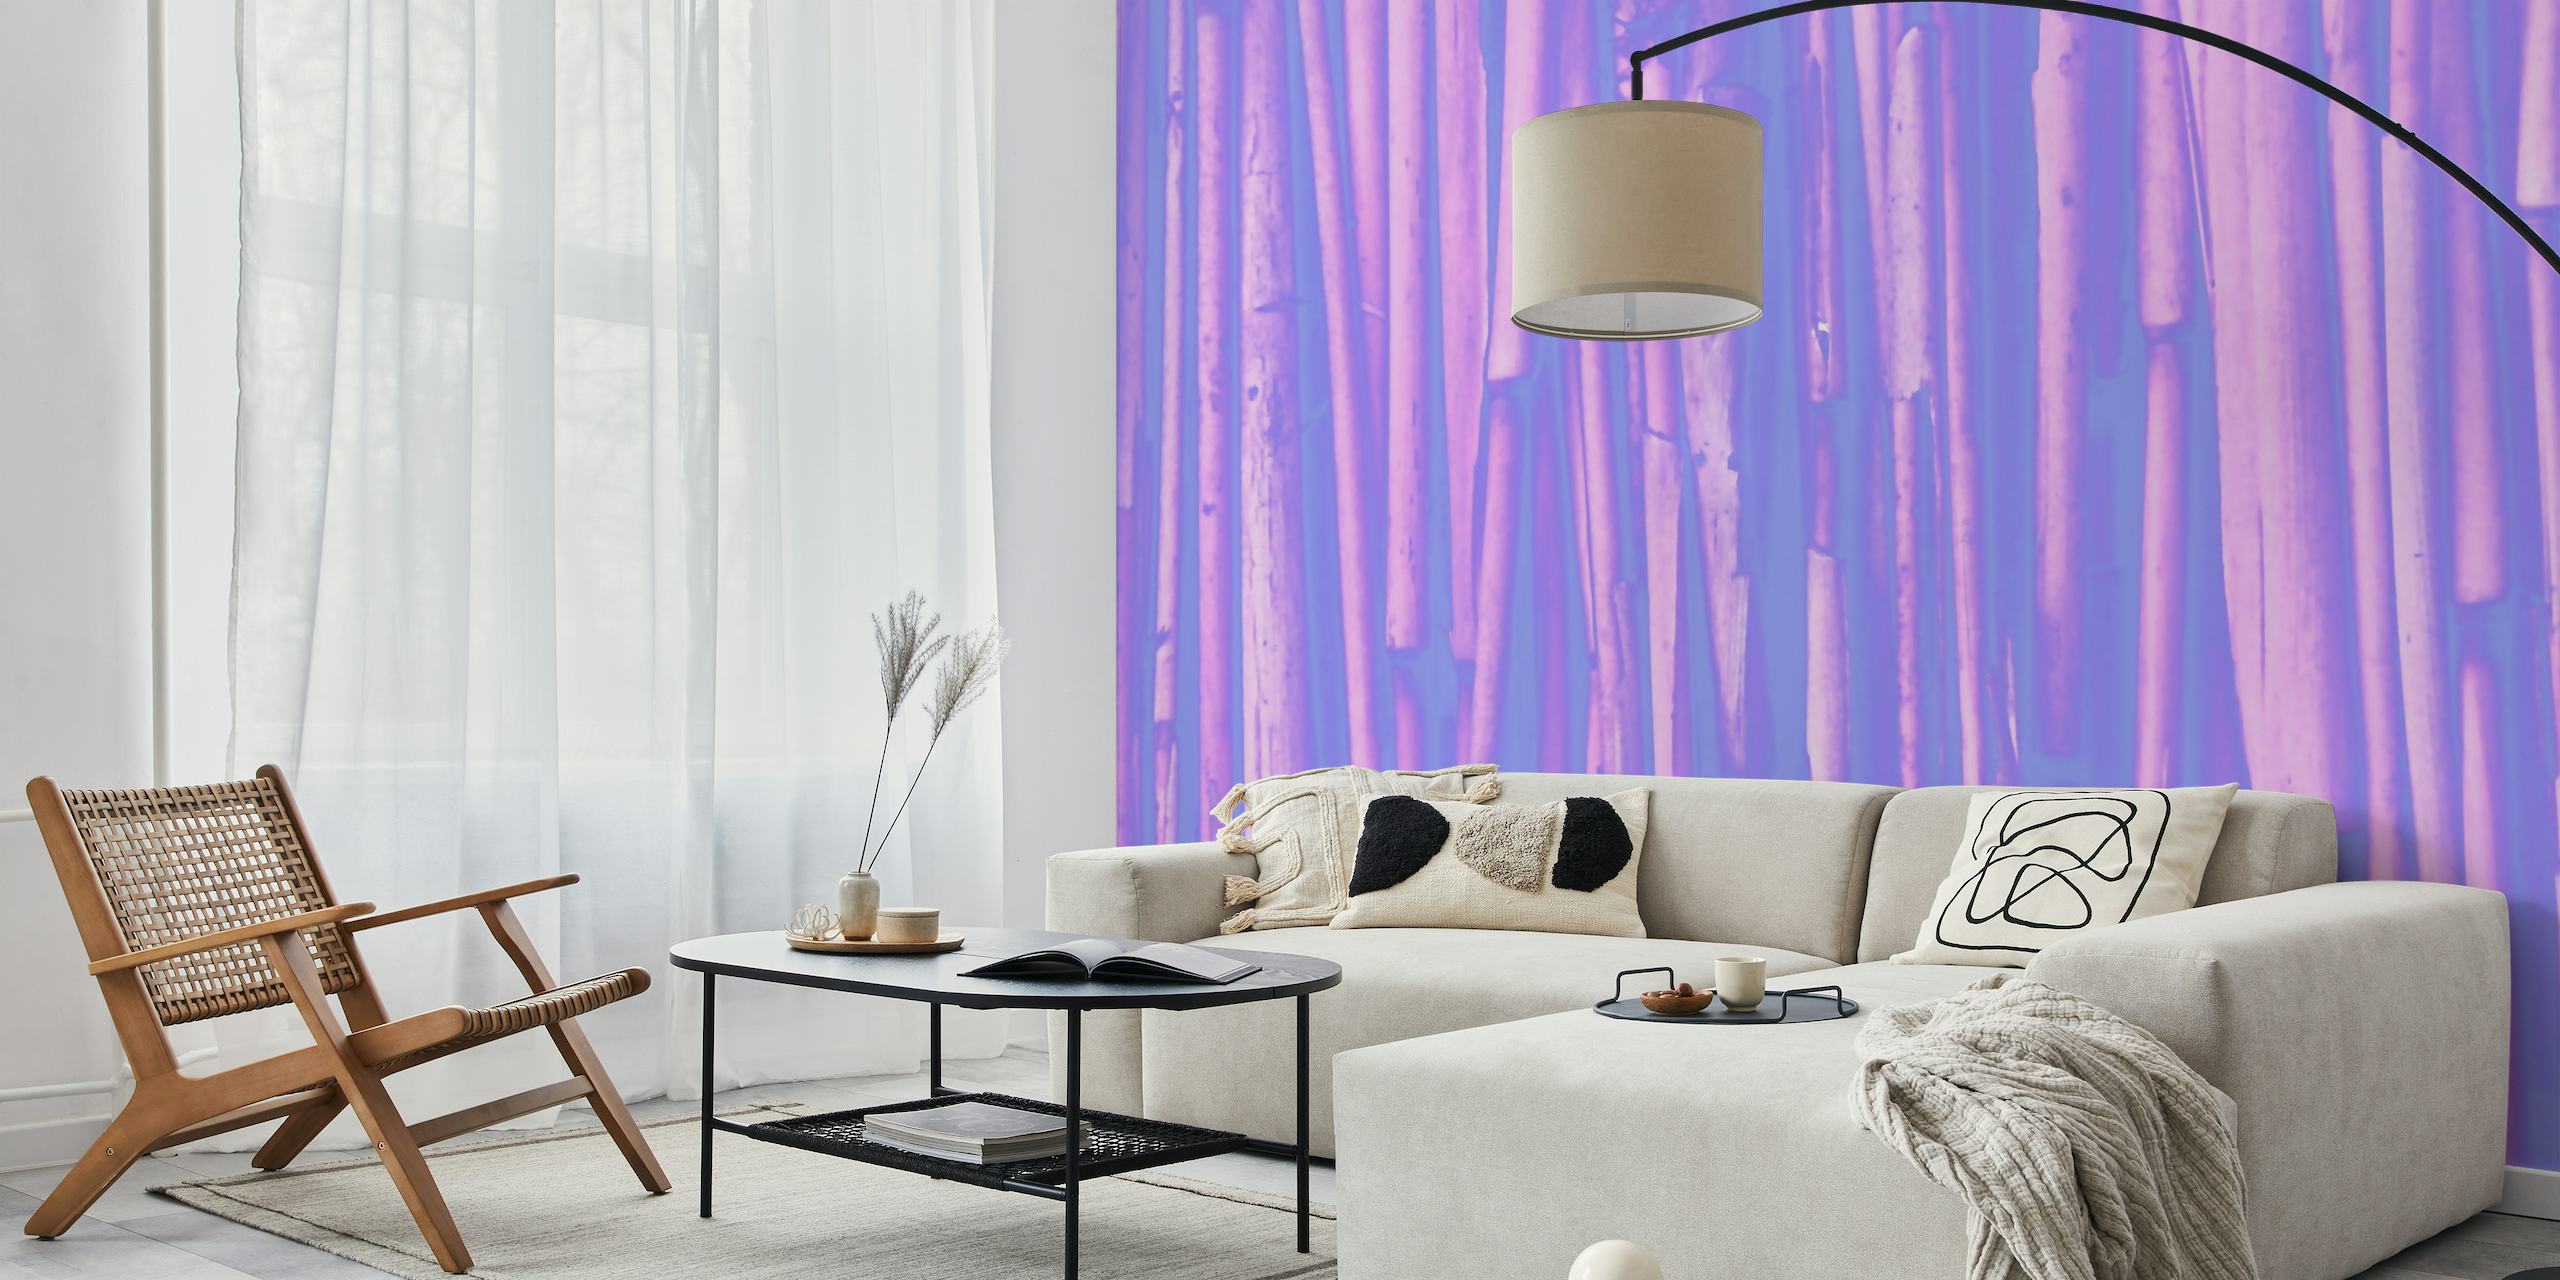 Fototapete aus stilisierten lila Bambusrohren, die eine ruhige und elegante Atmosphäre schaffen.